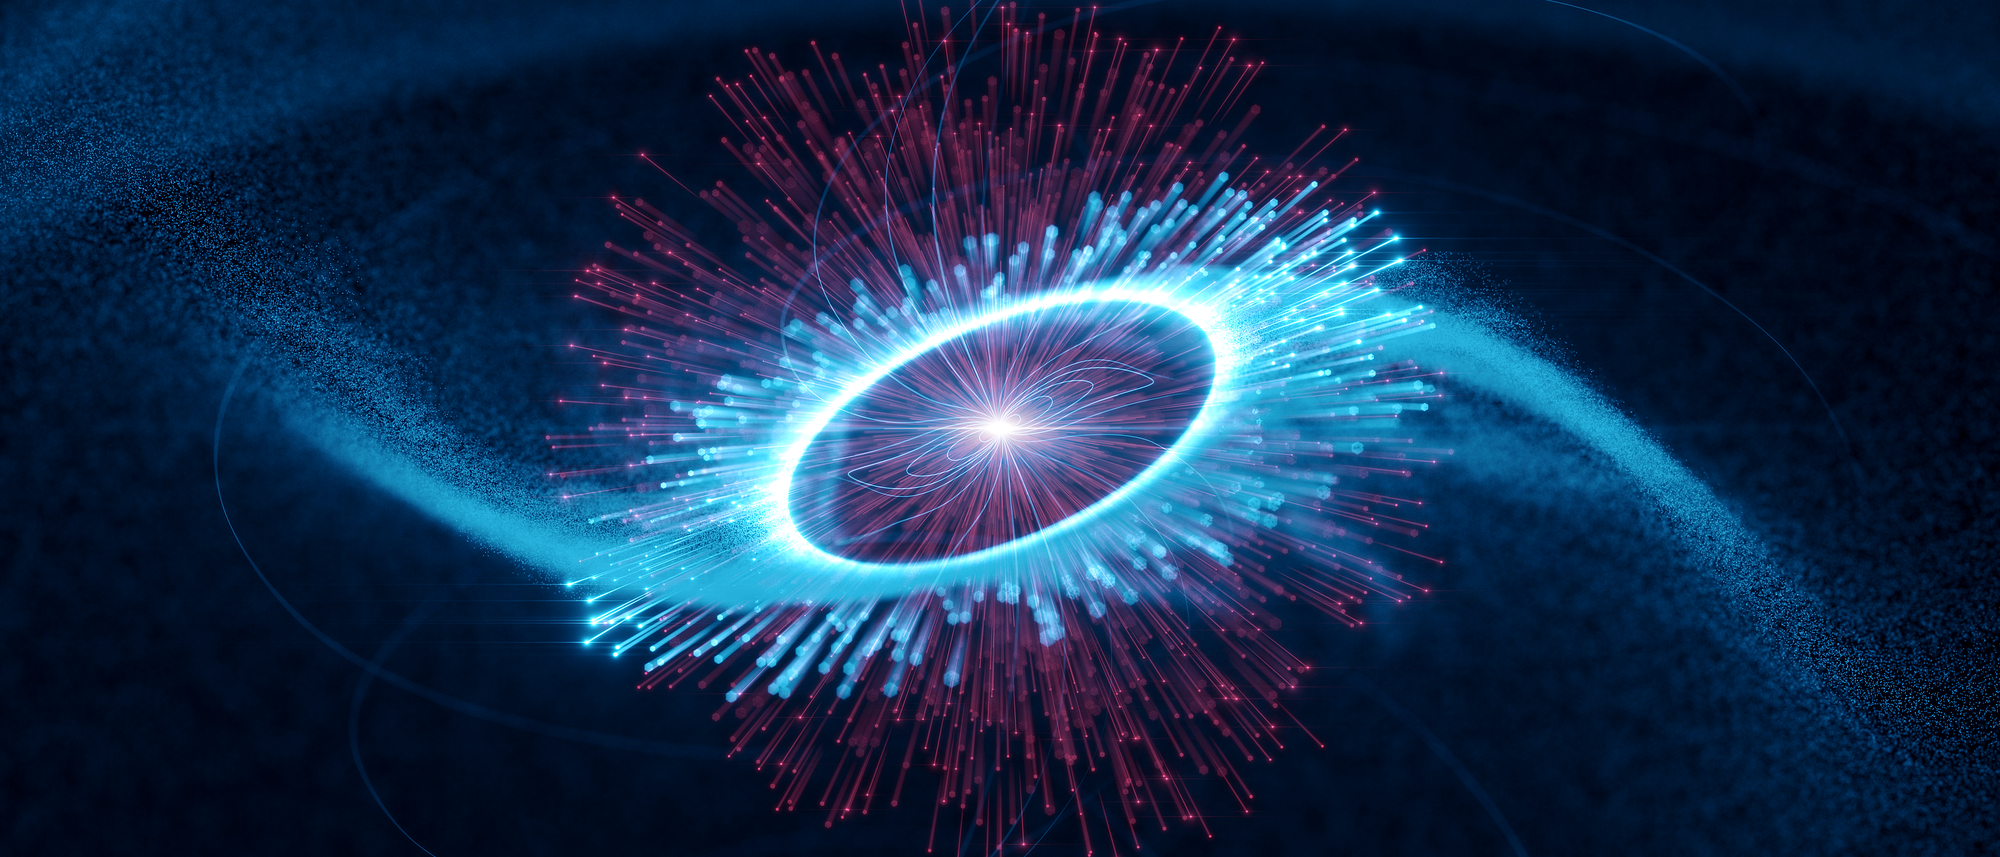 Diese Grafik soll den Vela-Pulsar darstellen. Ein hellblauer Wirbel symbolisiert schnelle Elektronen, die sich vom hellen Kern wegbewegen